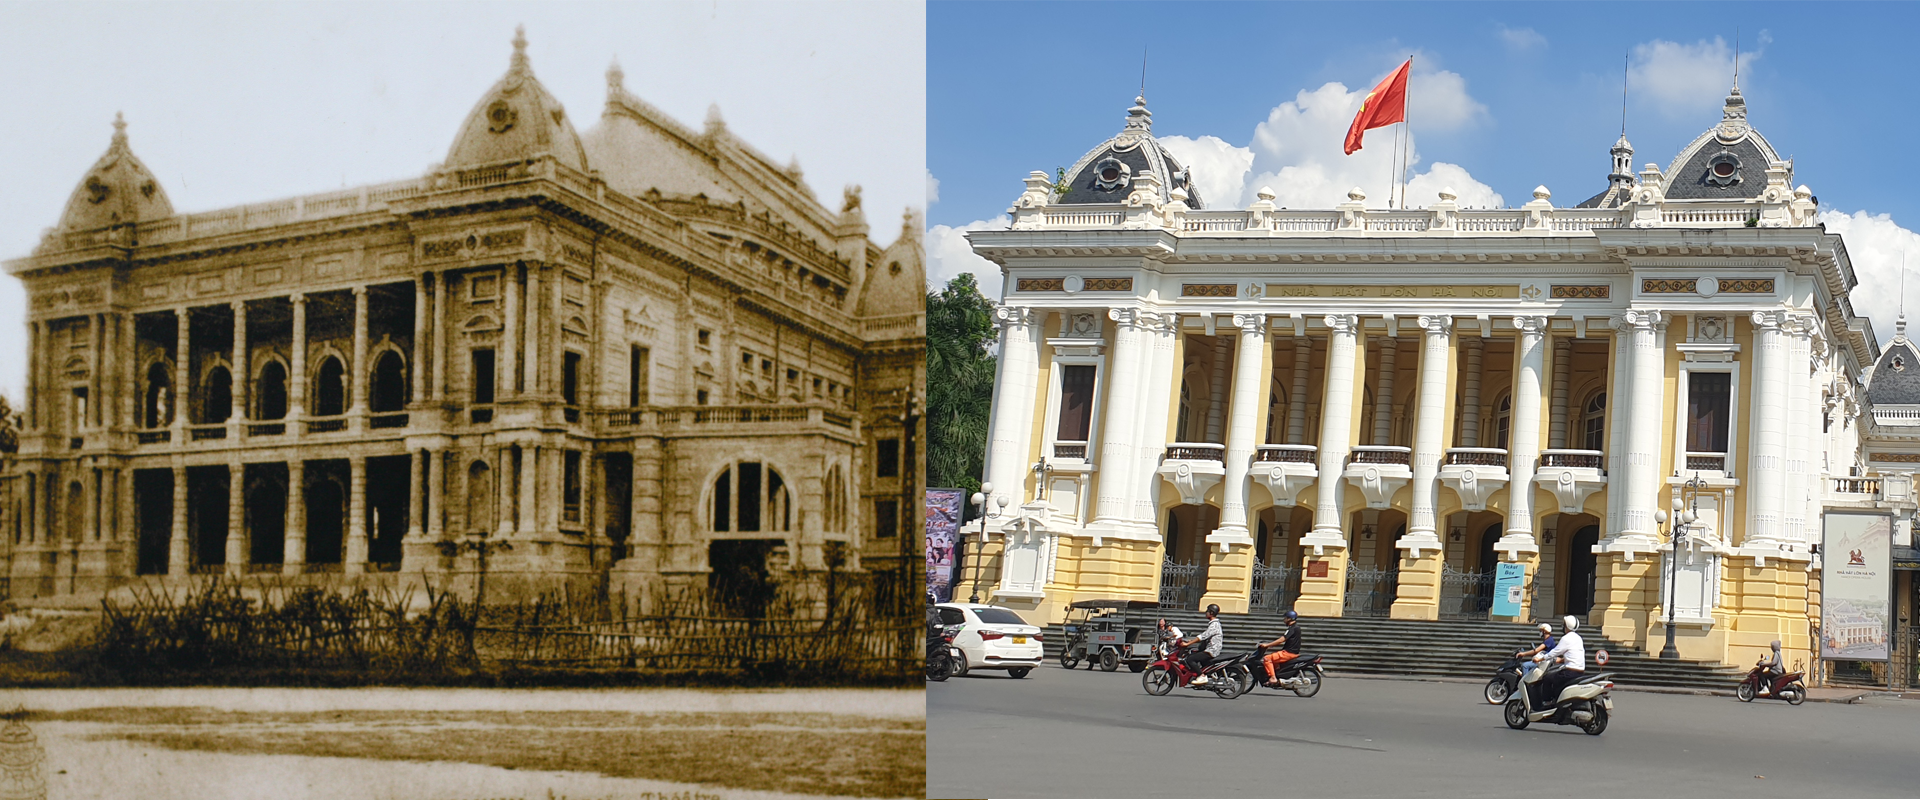 Những hình ảnh thú vị về sự đổi thay của Hà Nội sau 100 năm - Ảnh 4.